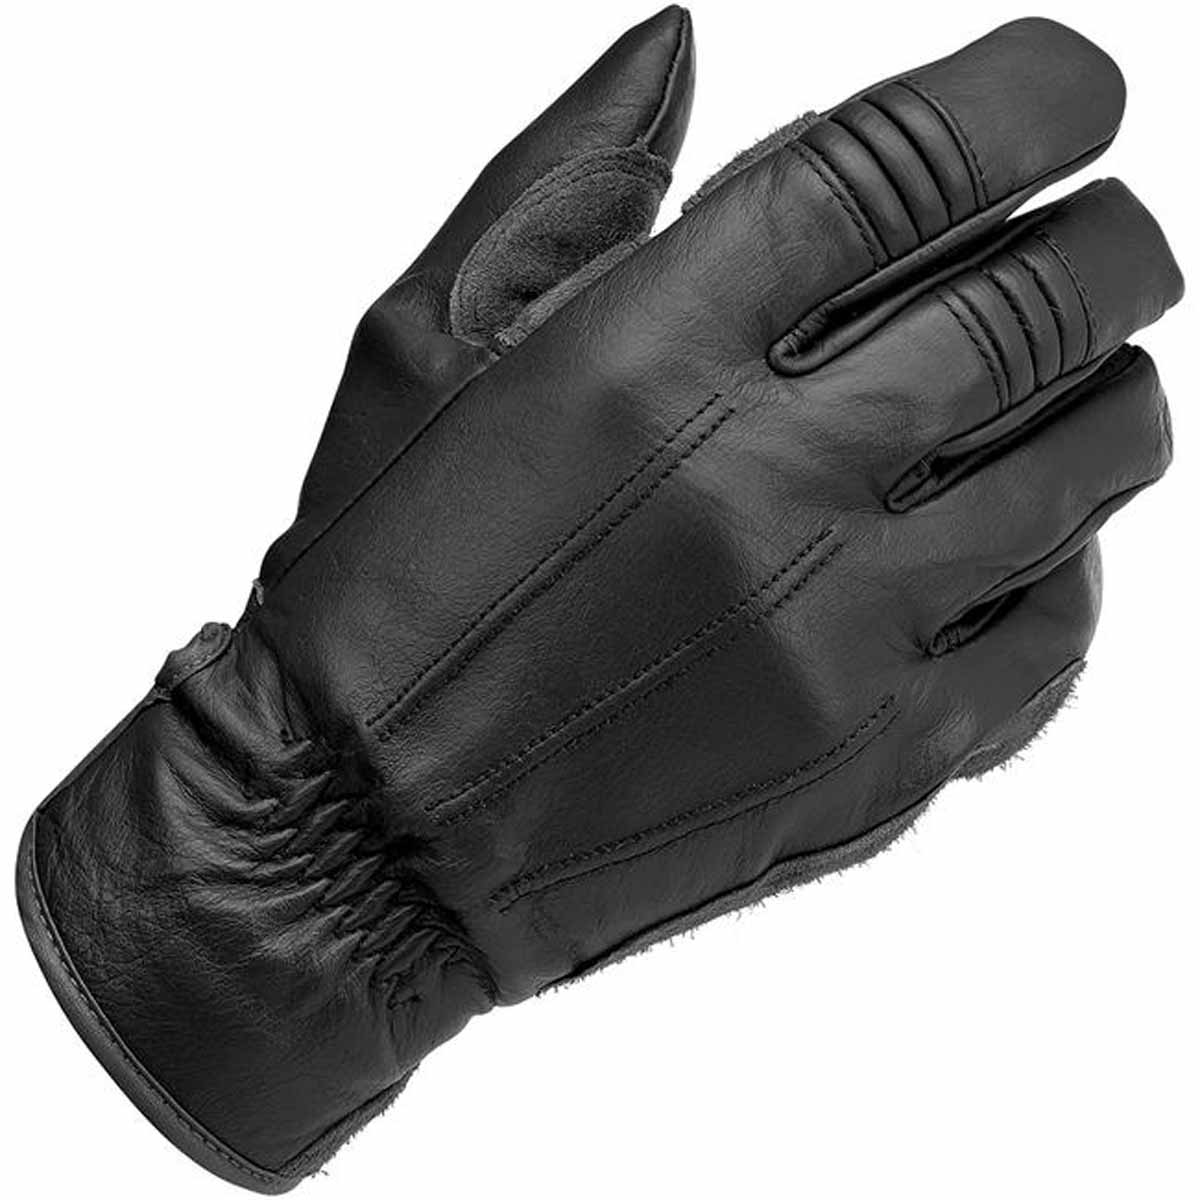 Biltwell - Work Gloves 2.0 - Black